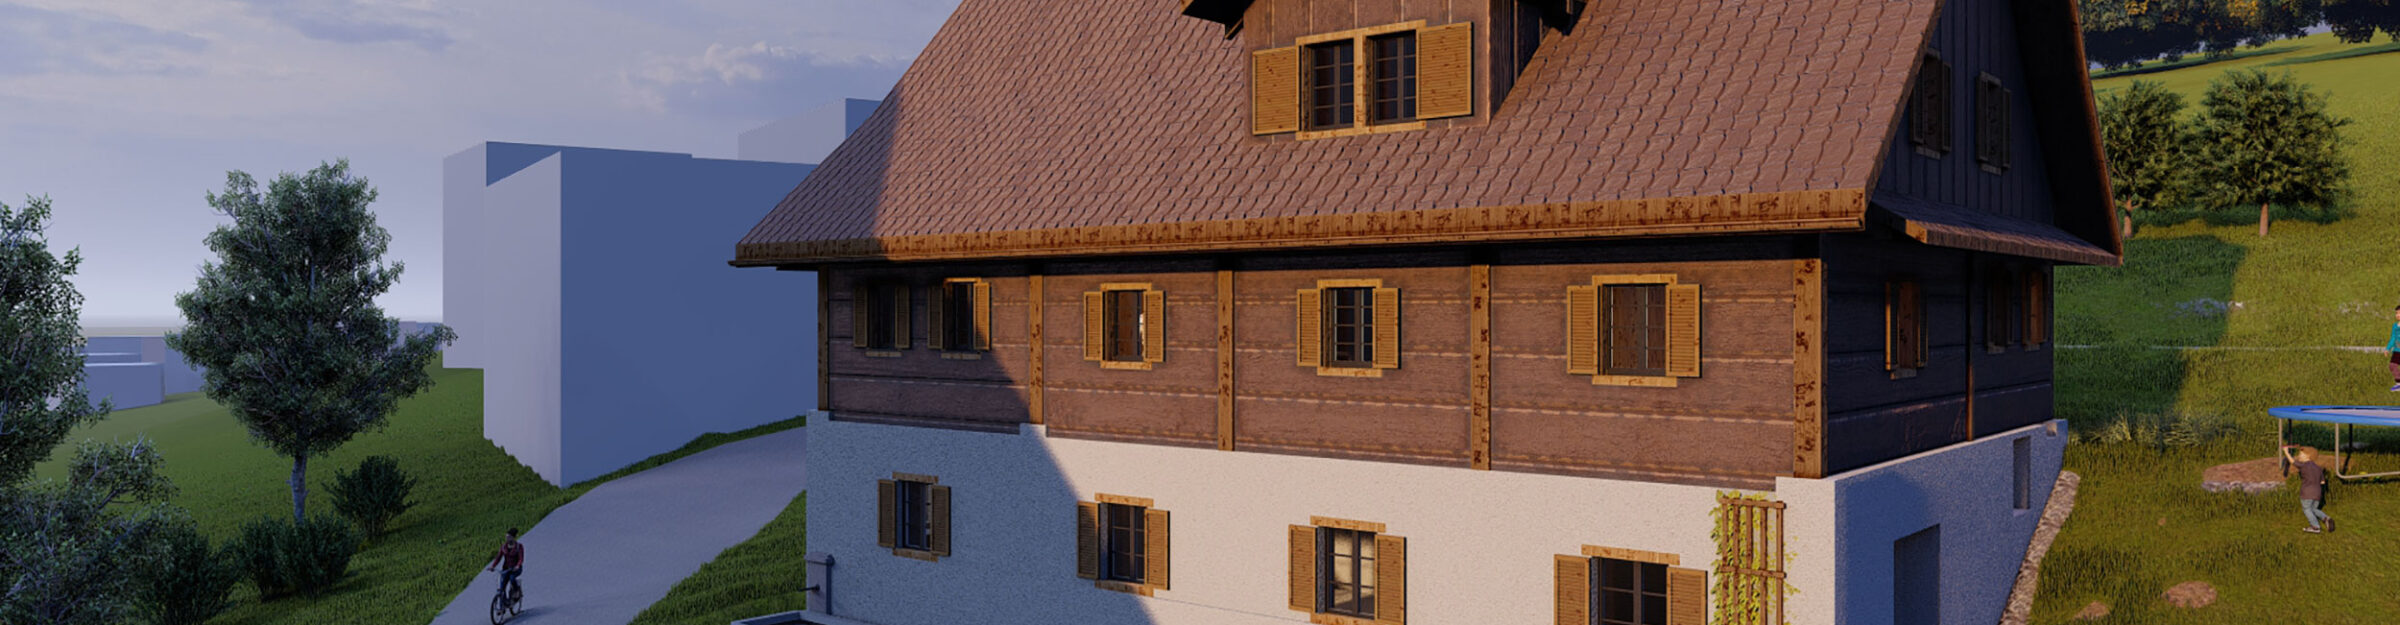 Visualisierung Umbau Trotte zu Wohnungen, Küssnacht am Rigi SZ